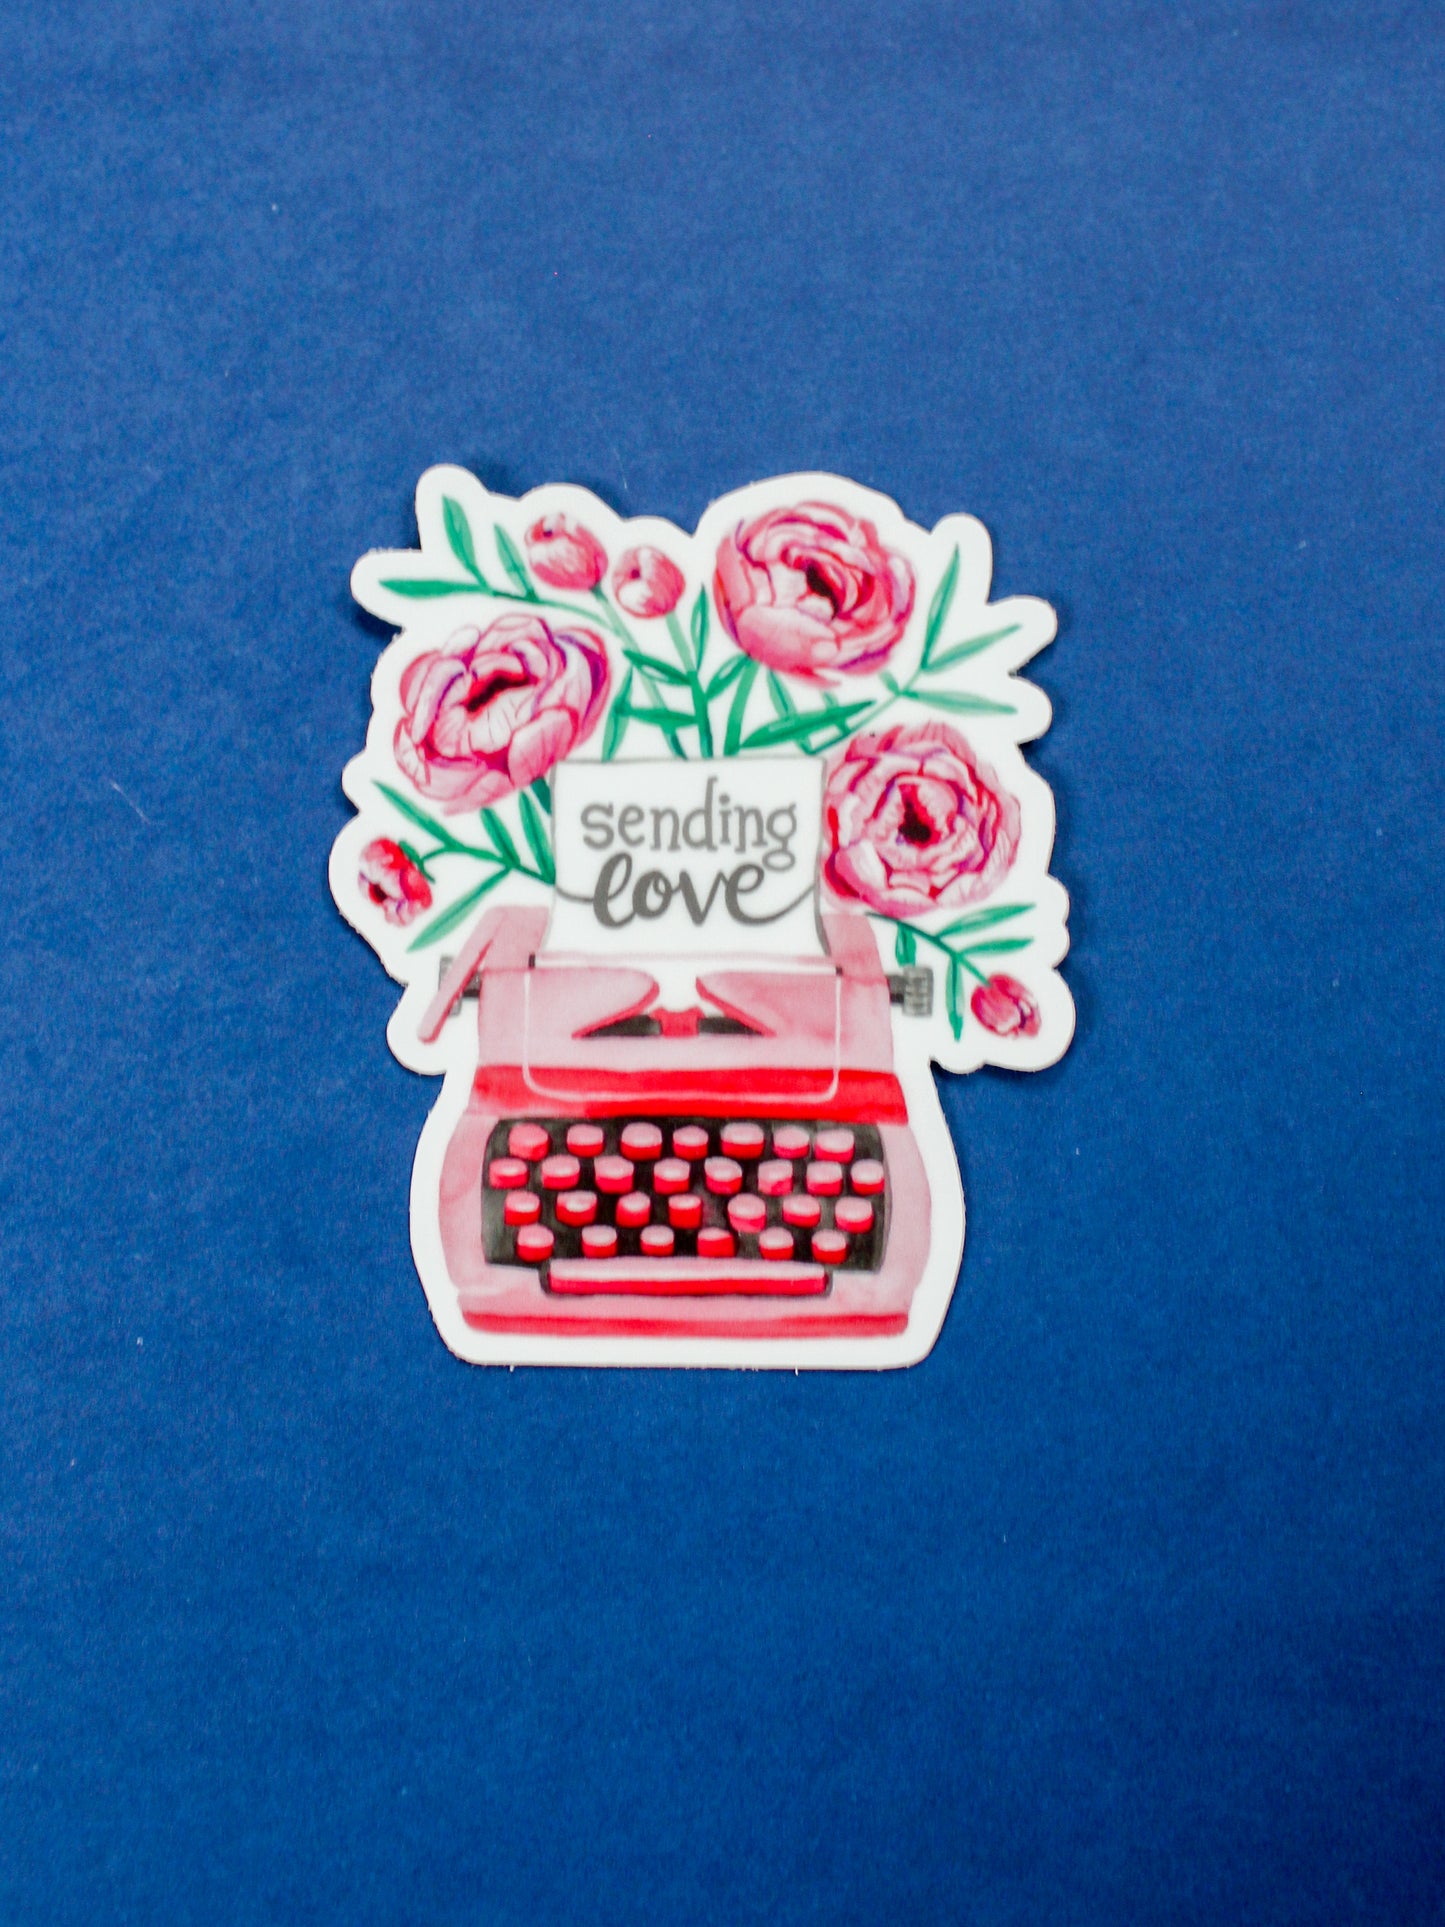 "Sending Love" Typewriter Card